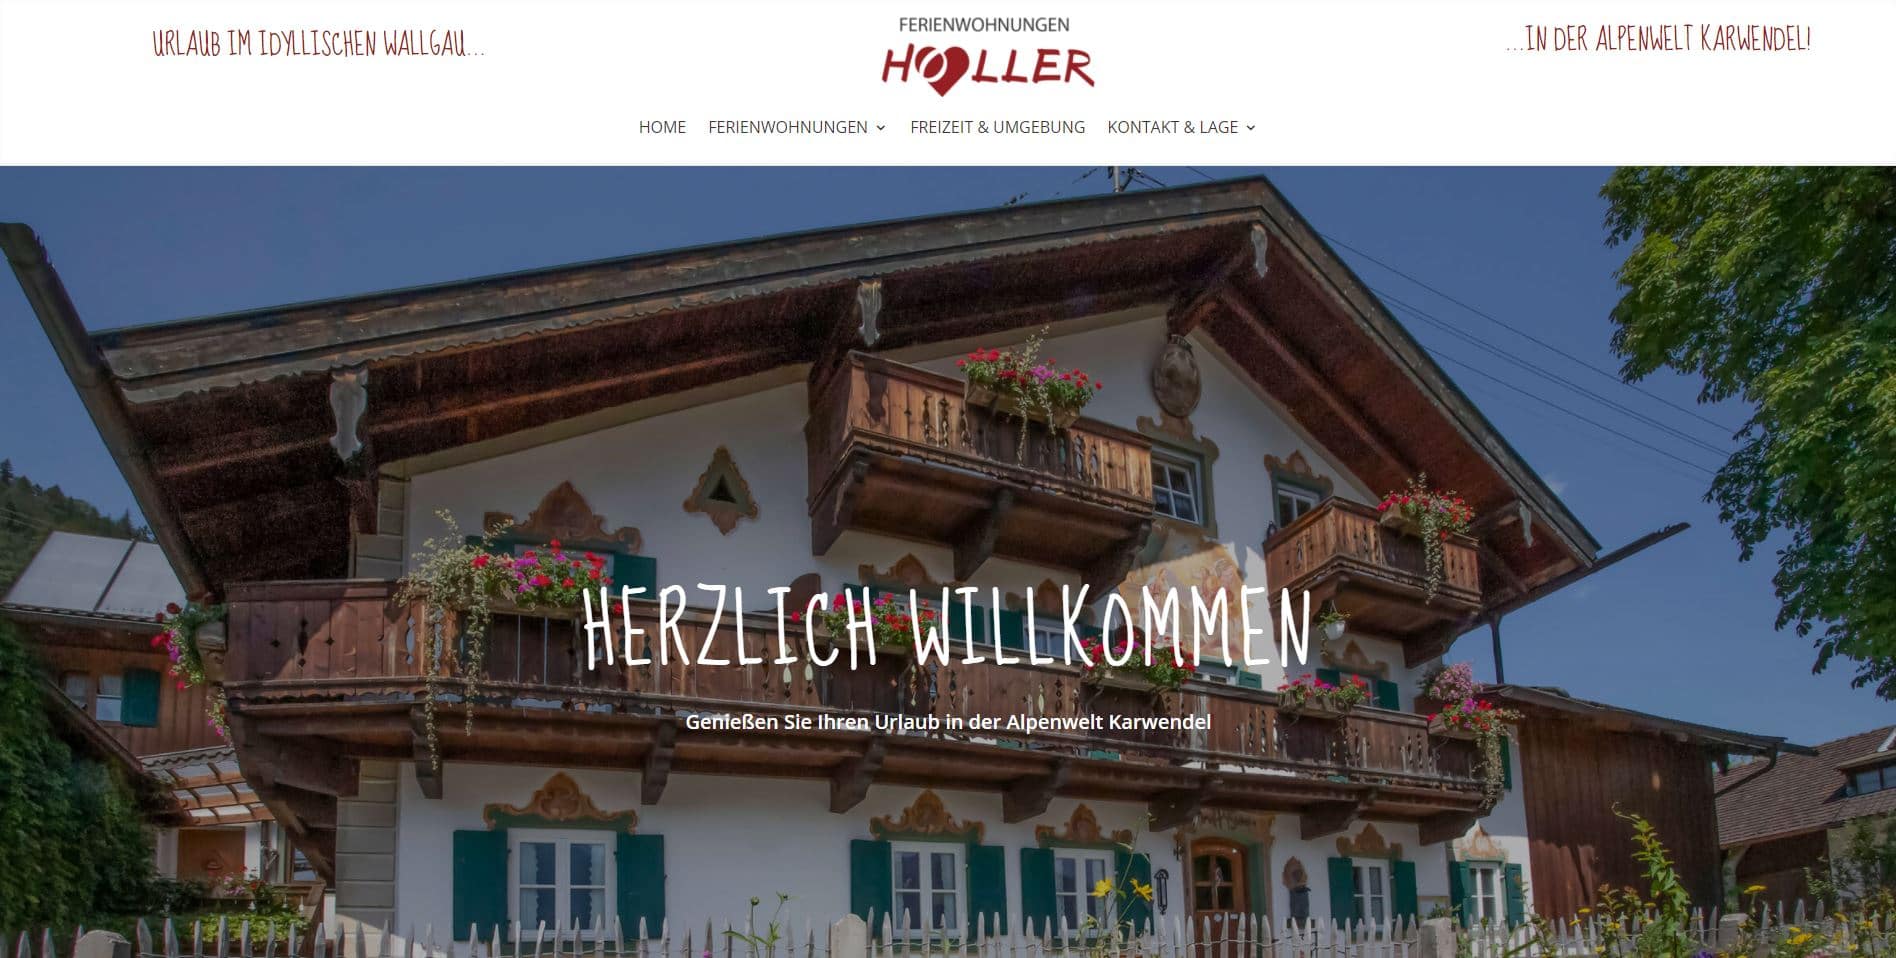 (c) Holler-urlaub-wallgau.de